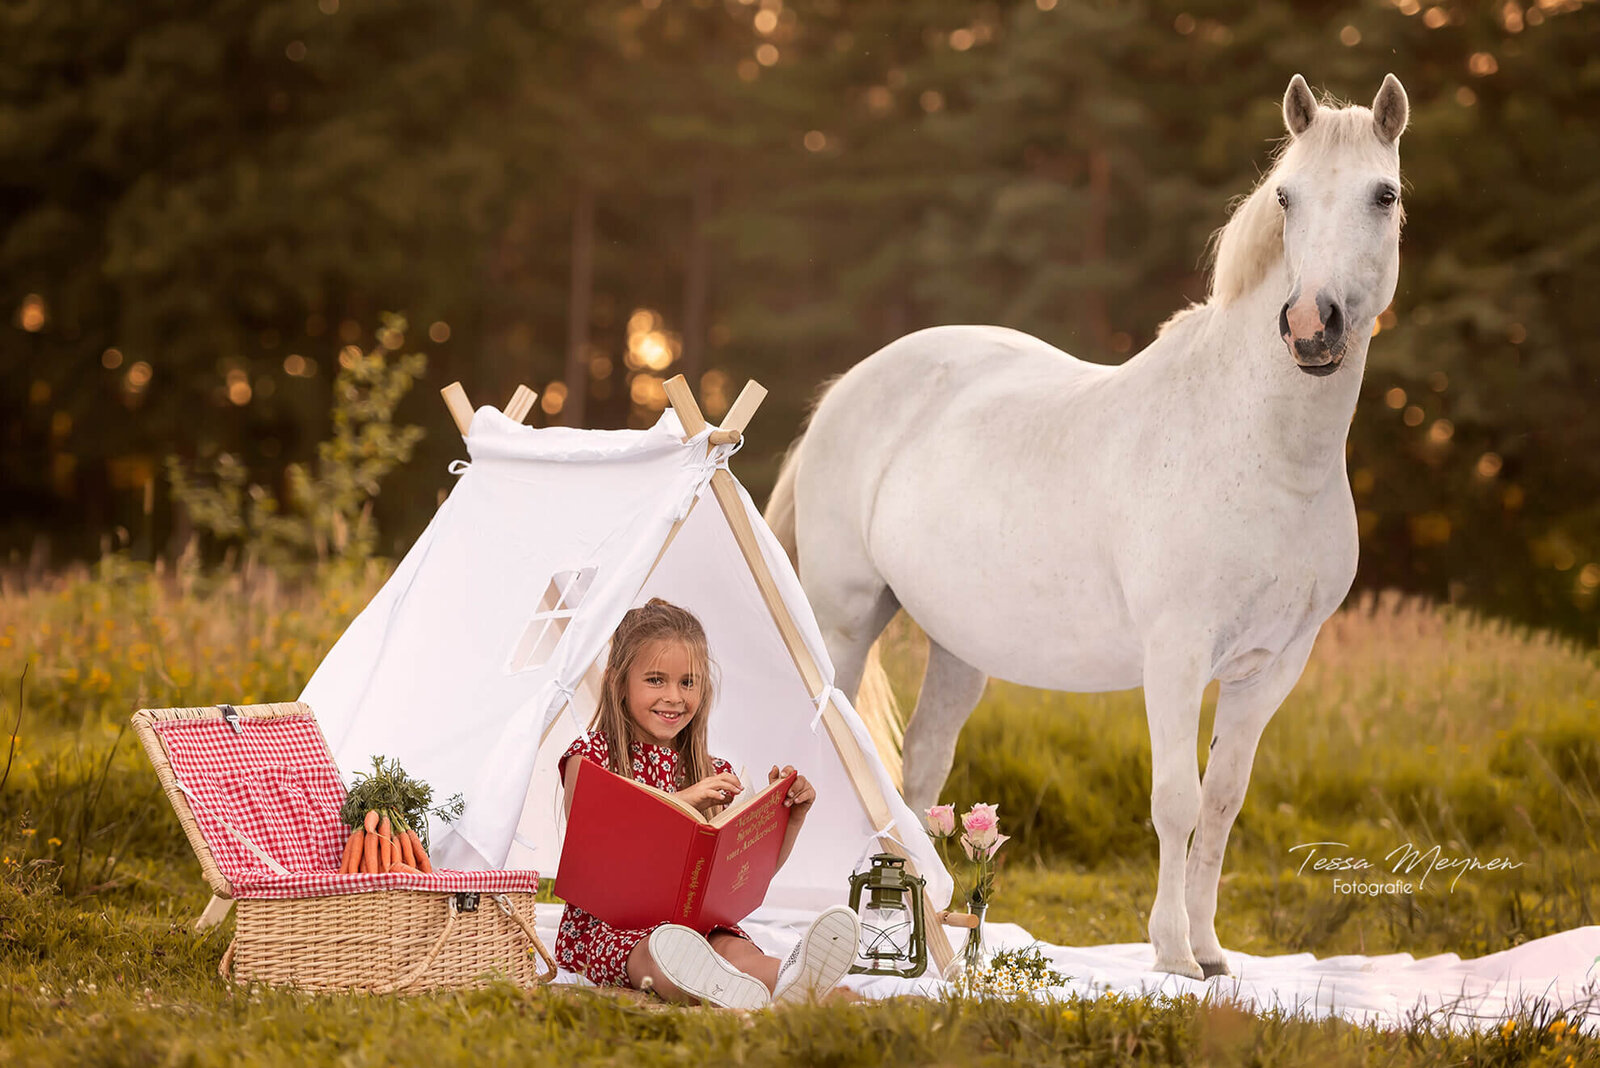 Picknicken met je paard tijdens een fotoshoot? Superleuk!